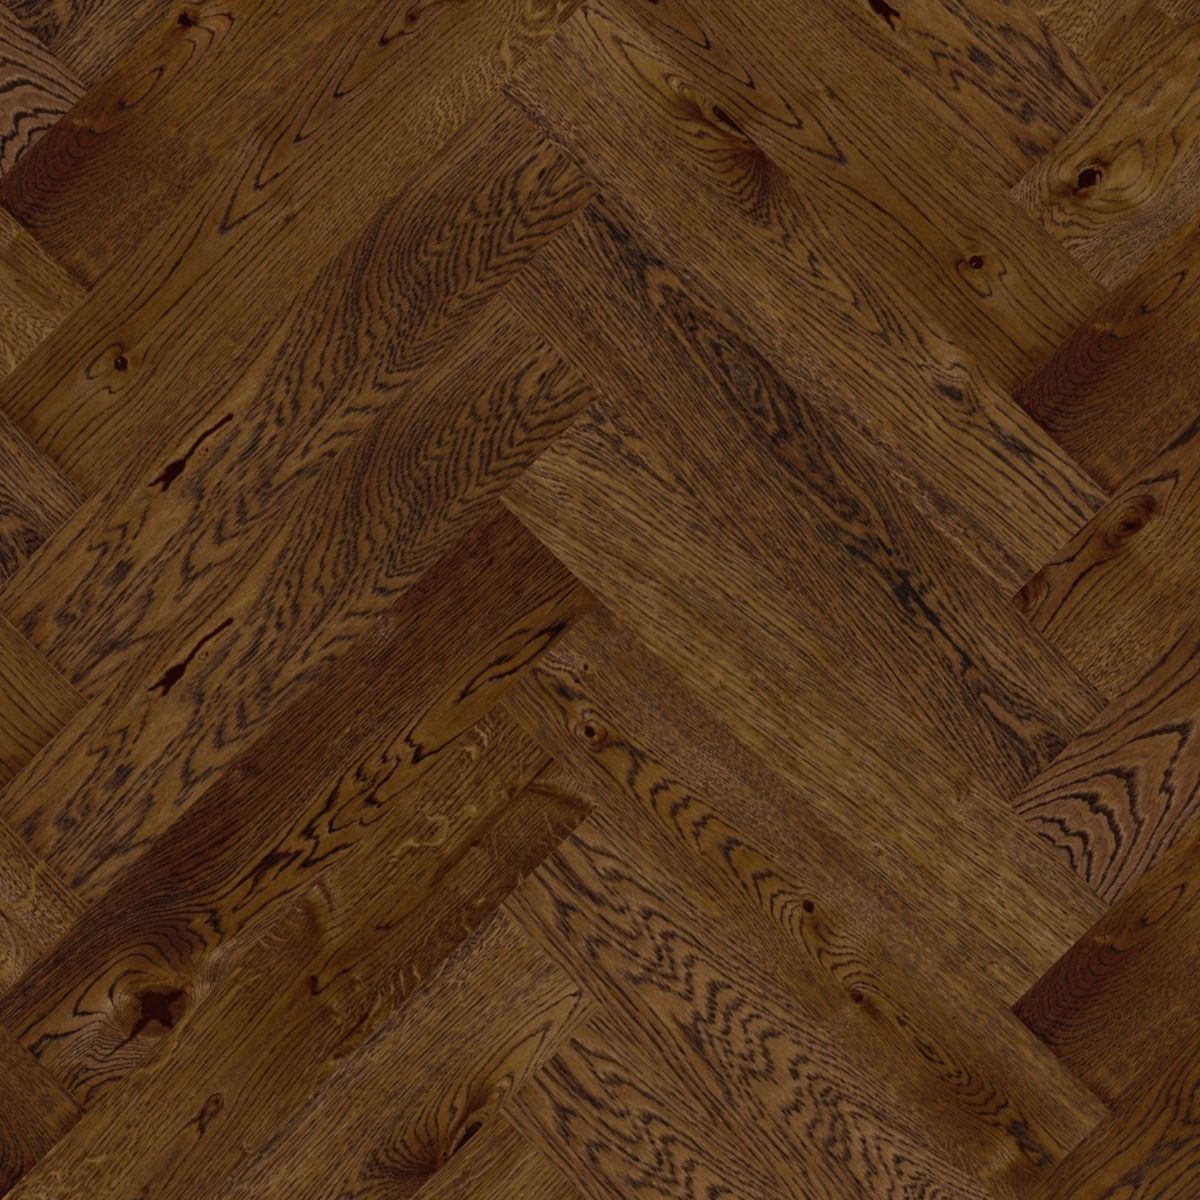 Wood Connexions Herringbone Engineered Flooring £118.95per m2